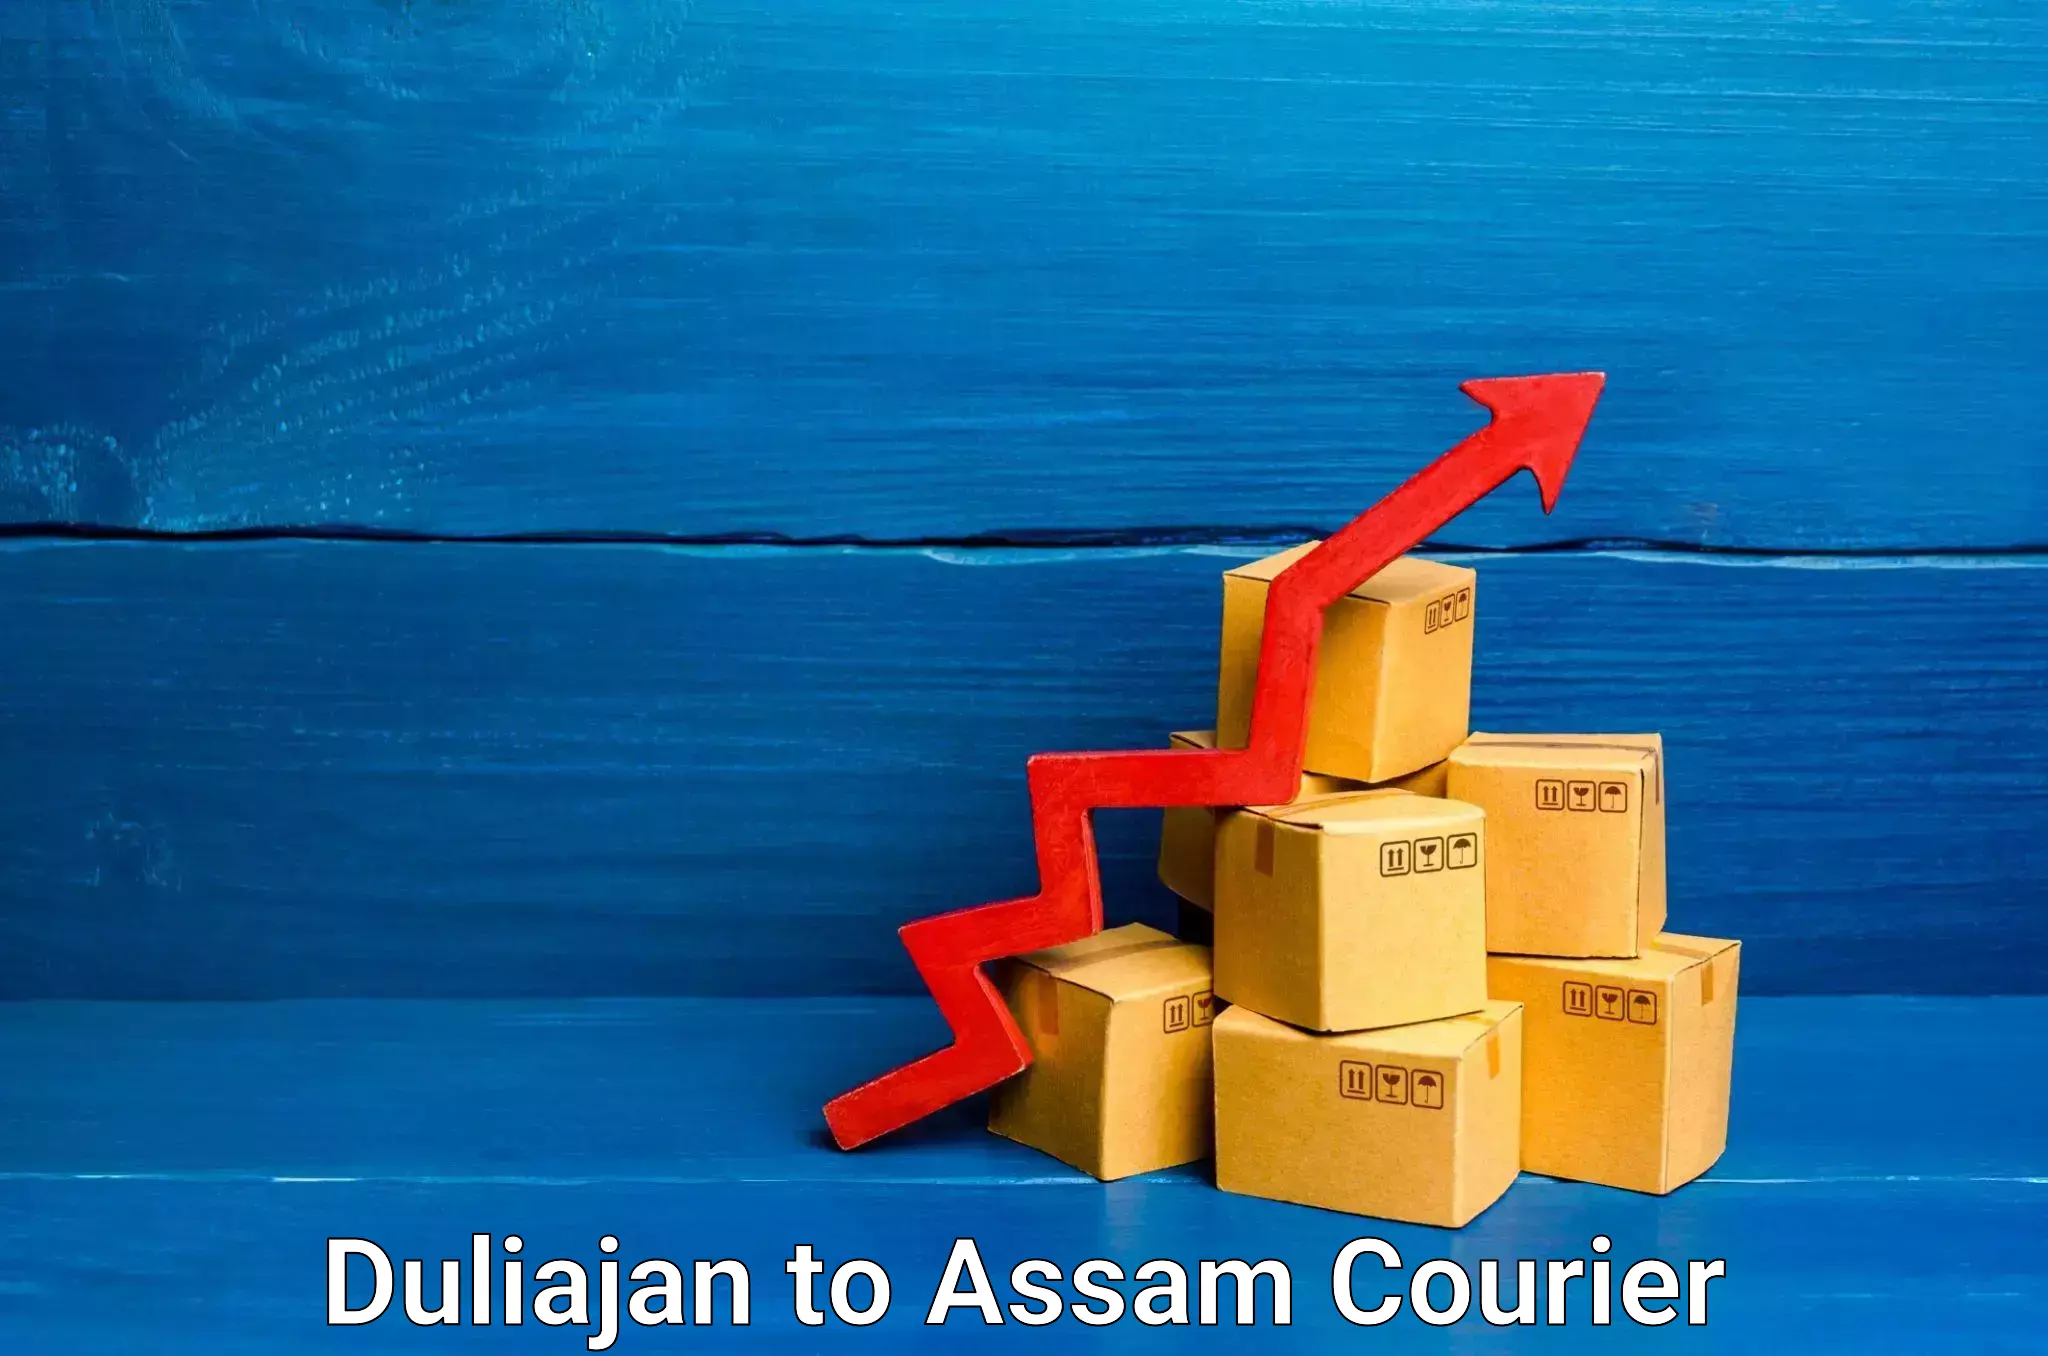 Express logistics providers Duliajan to Assam